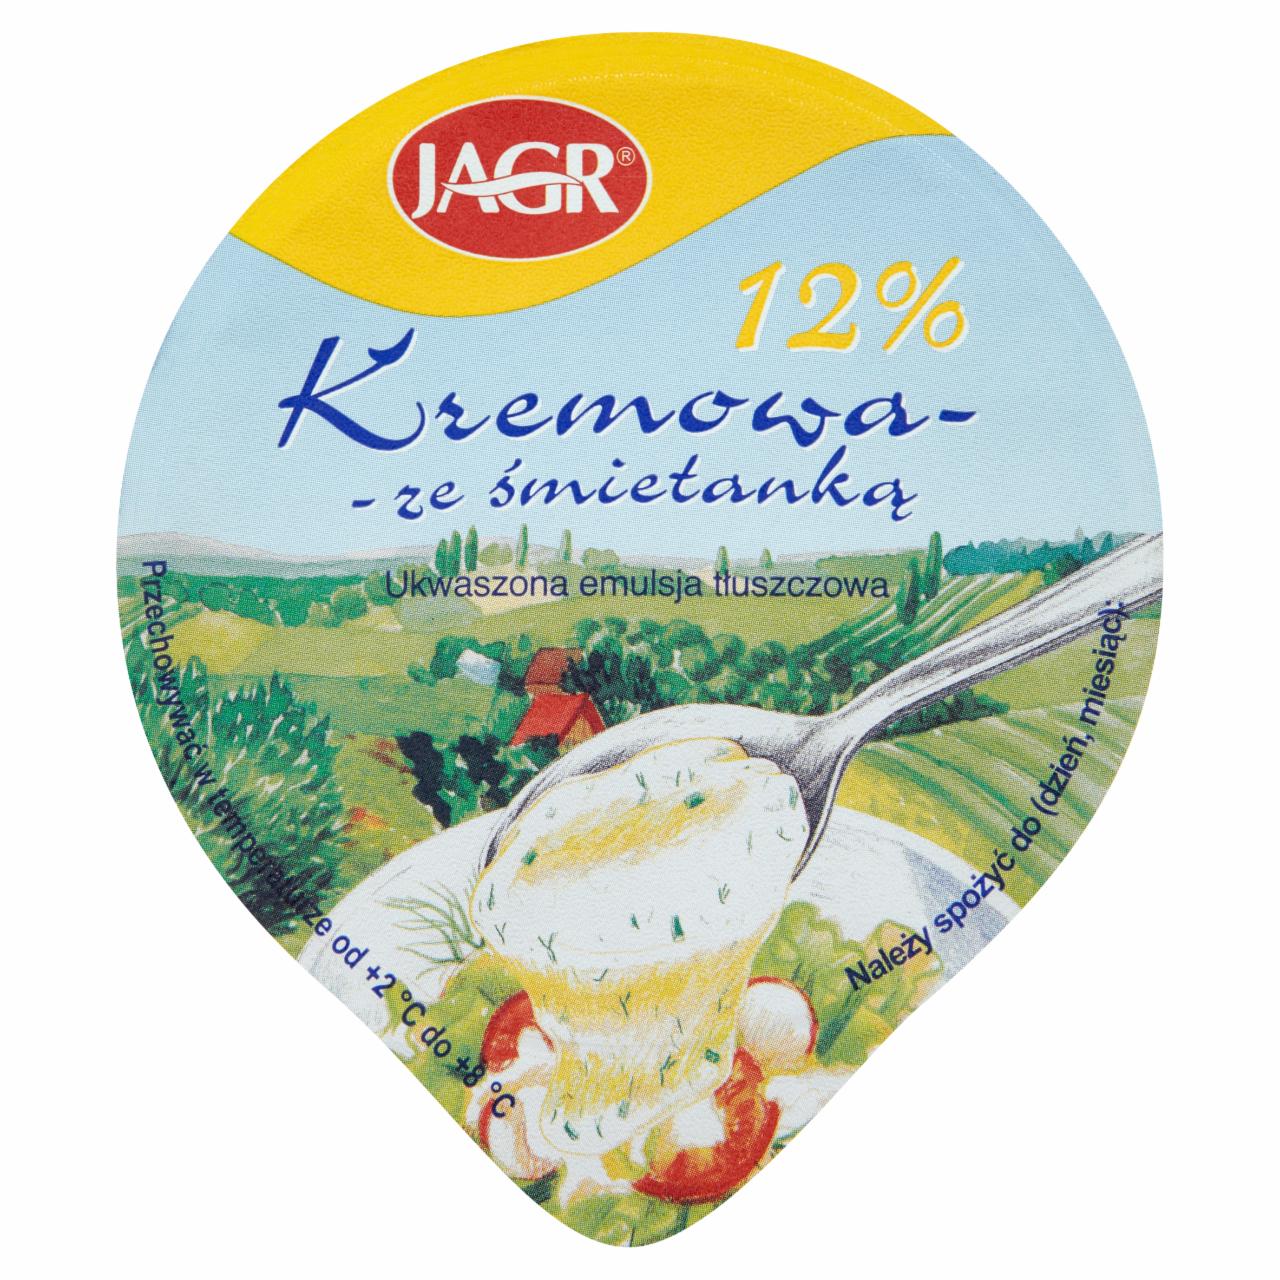 Zdjęcia - Jagr Kremowa ze śmietanką 12% Ukwaszona emulsja tłuszczowa 200 g